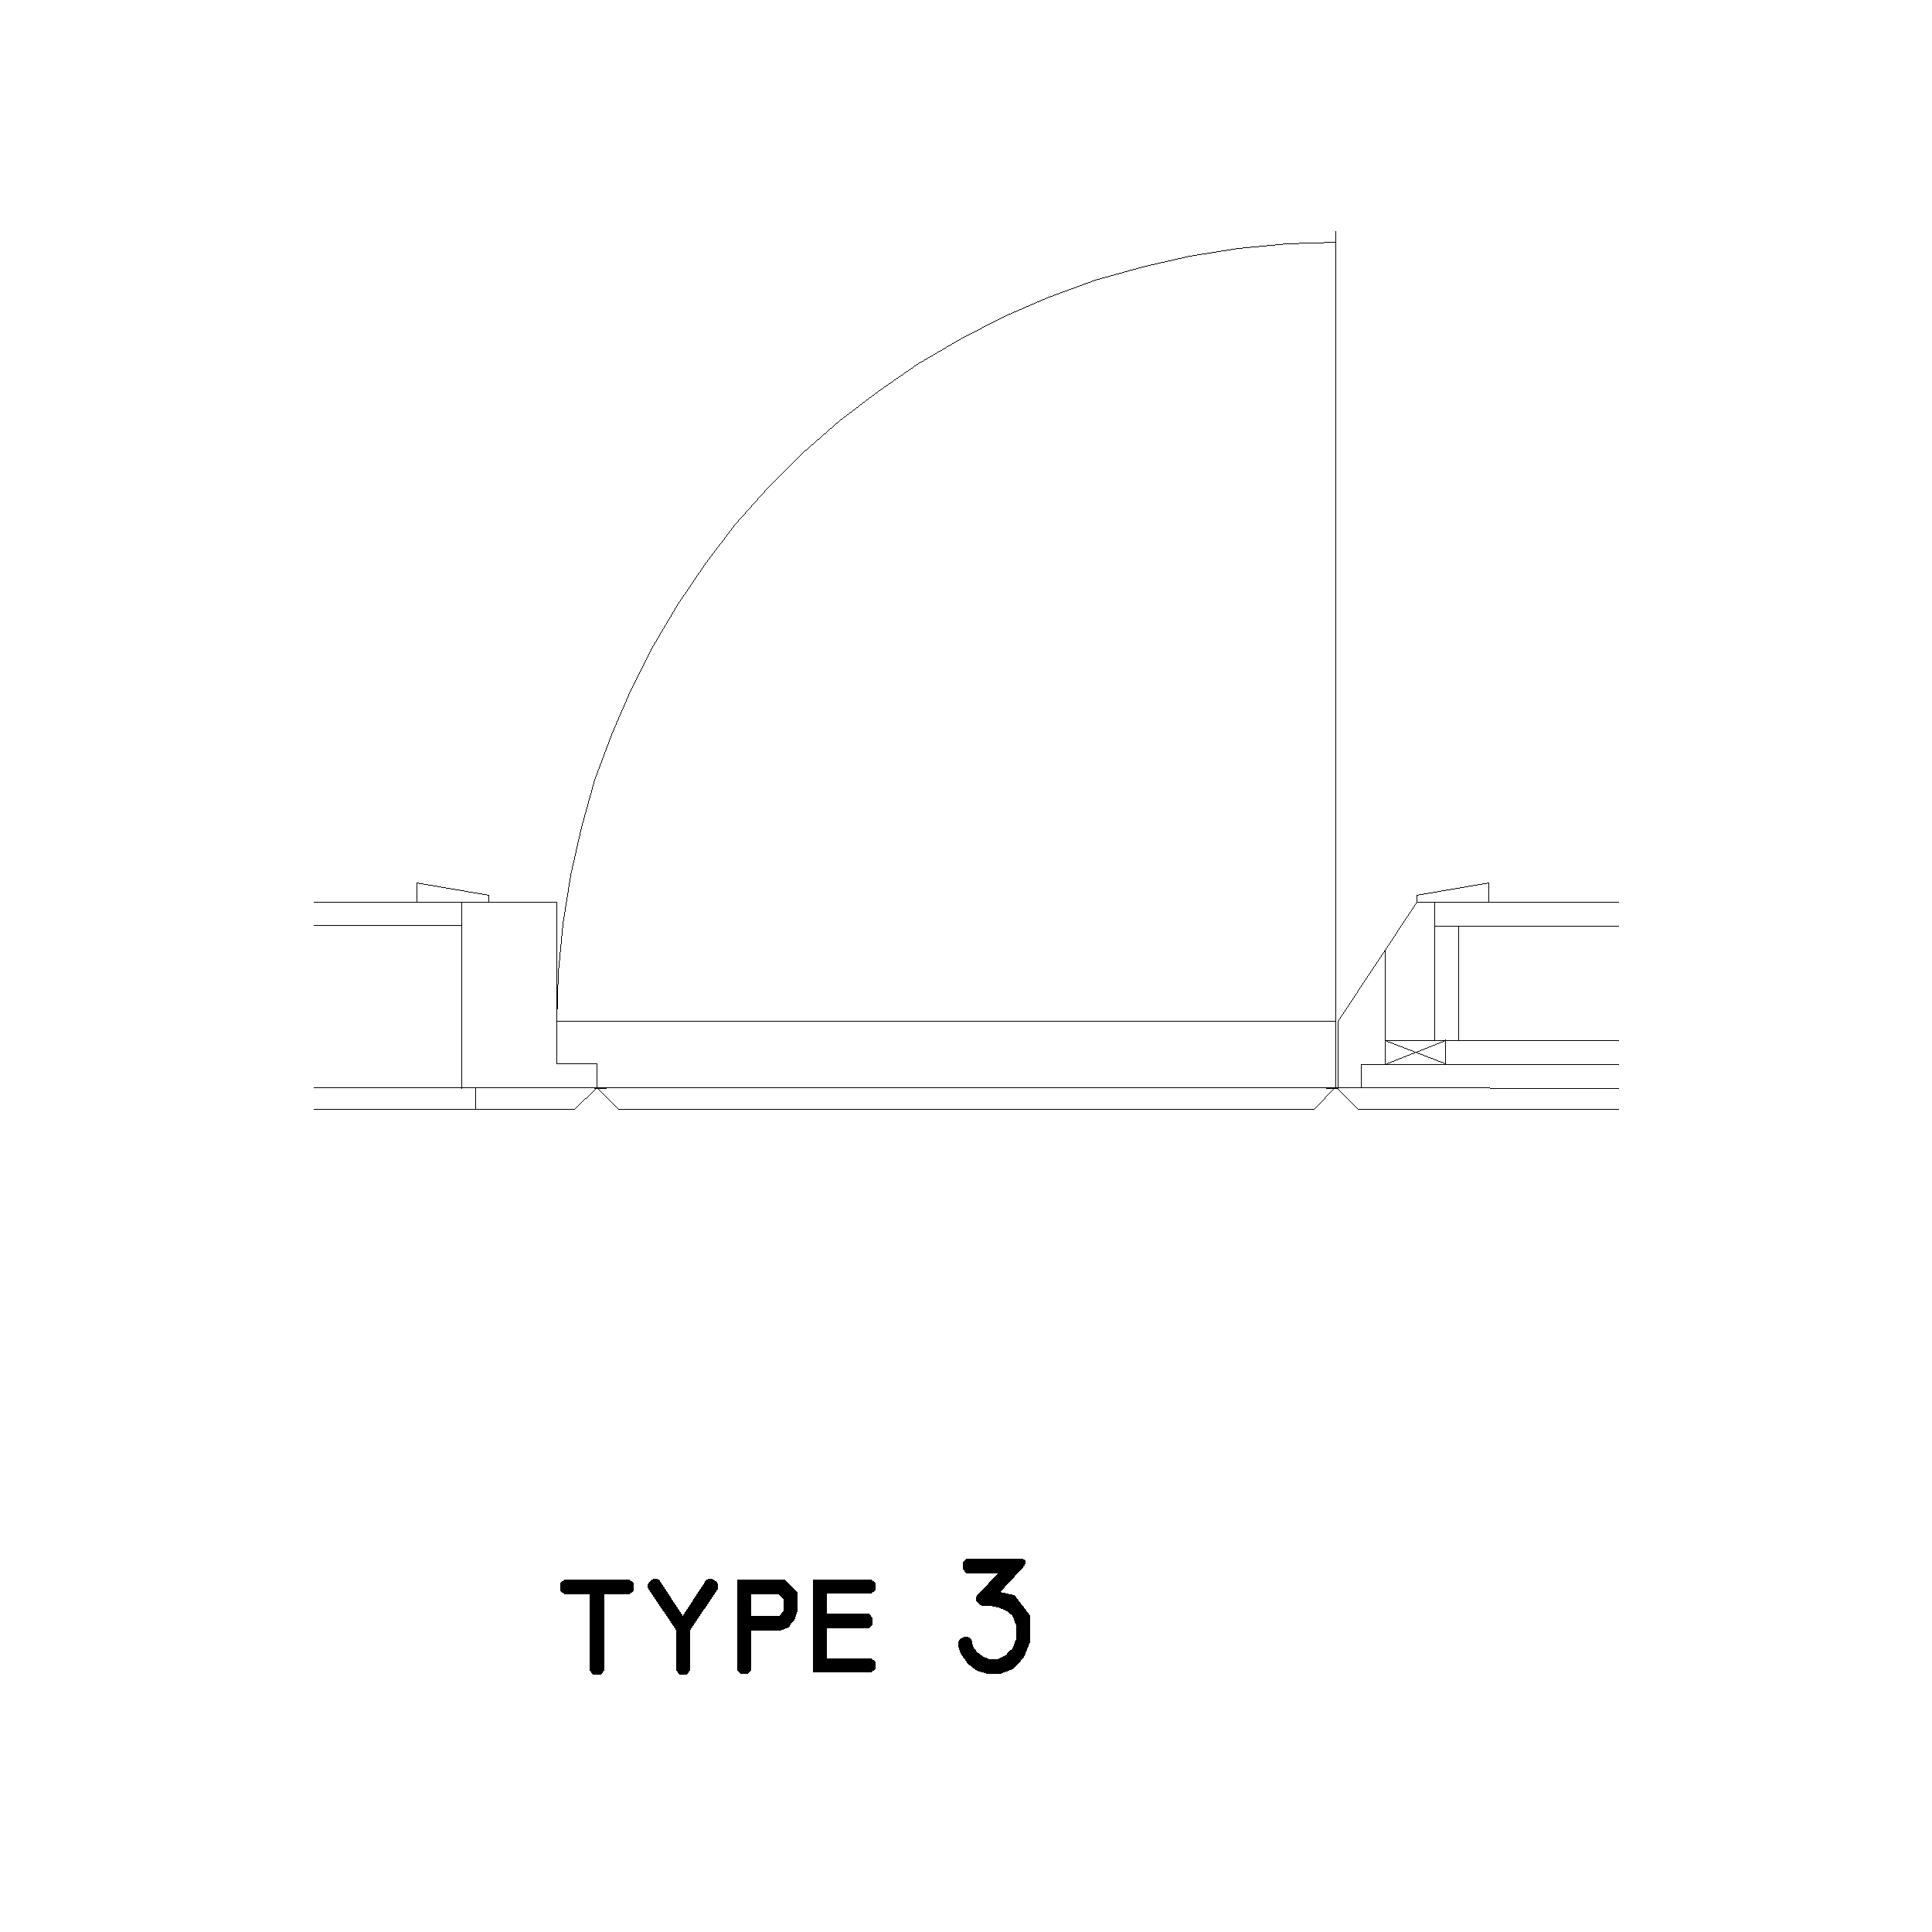 Type 3 Door Plan: 2D Top View Plan - Cadblockdwg